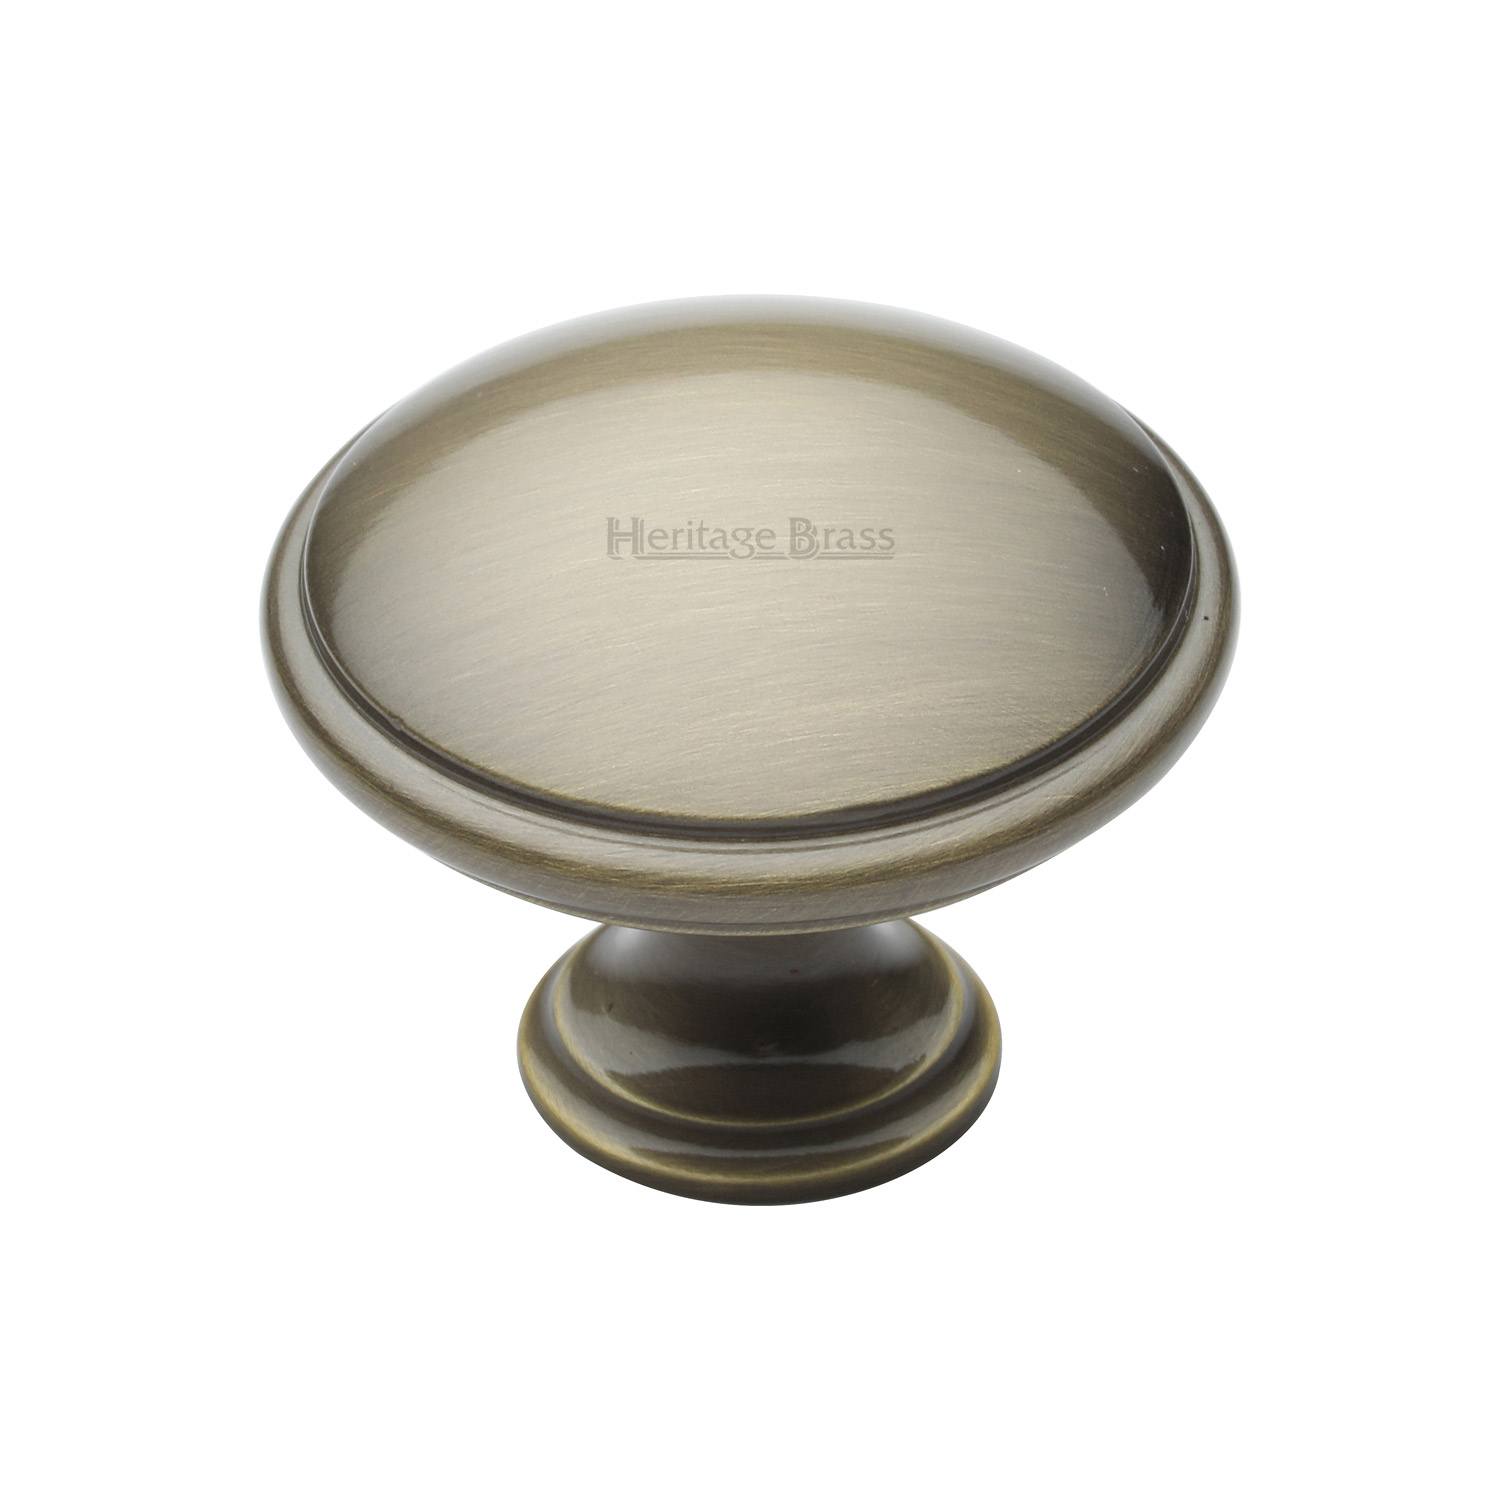 Heritage Brass Cabinet Knob Domed Design 38mm